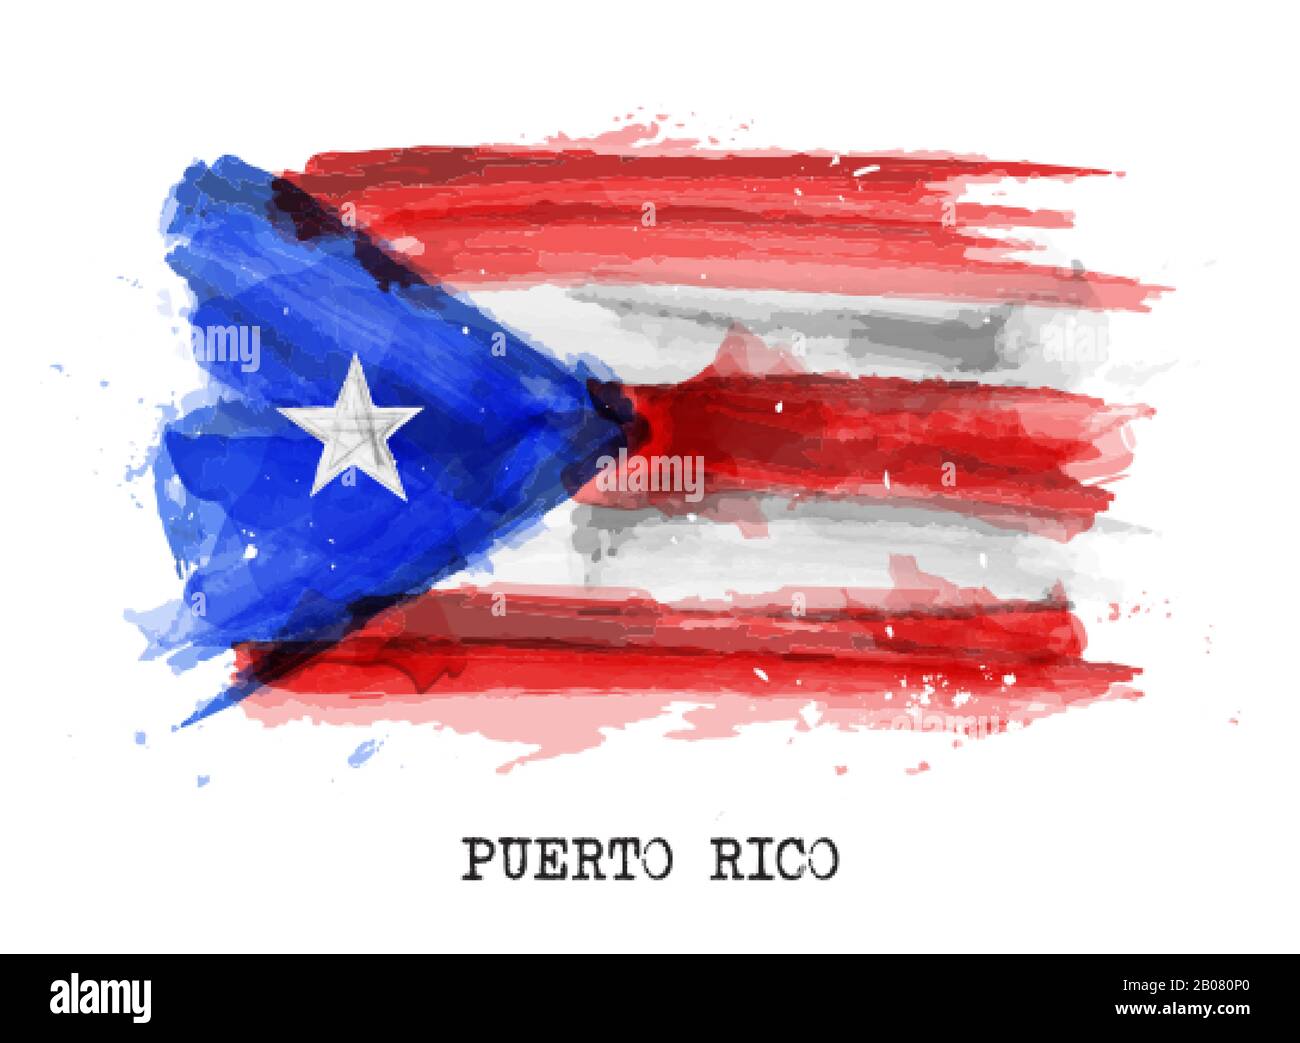 Realistische Farbe Malfahne von Puerto rico. Vektor. Stock Vektor